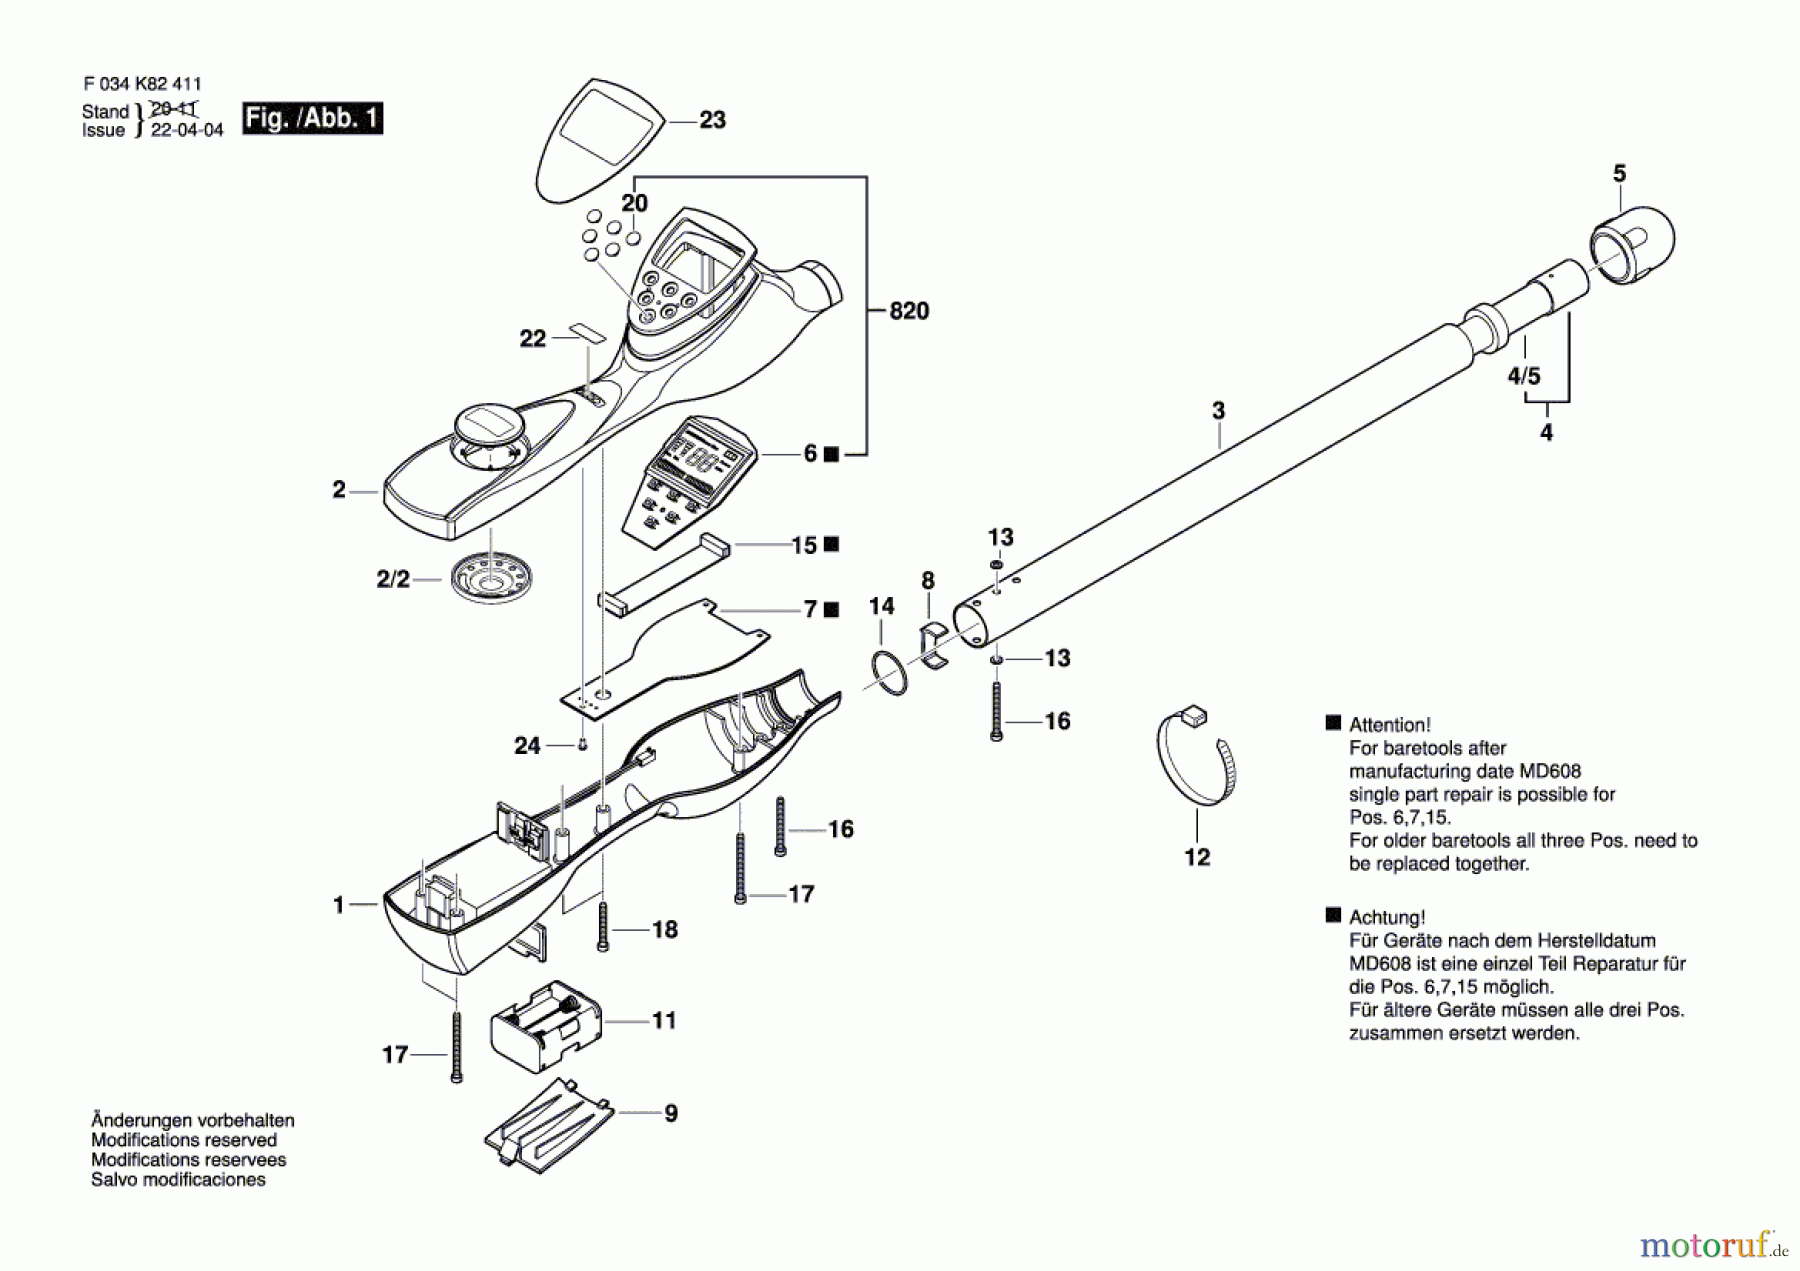  Bosch Werkzeug Metallortungsgerät 19-200 Seite 1